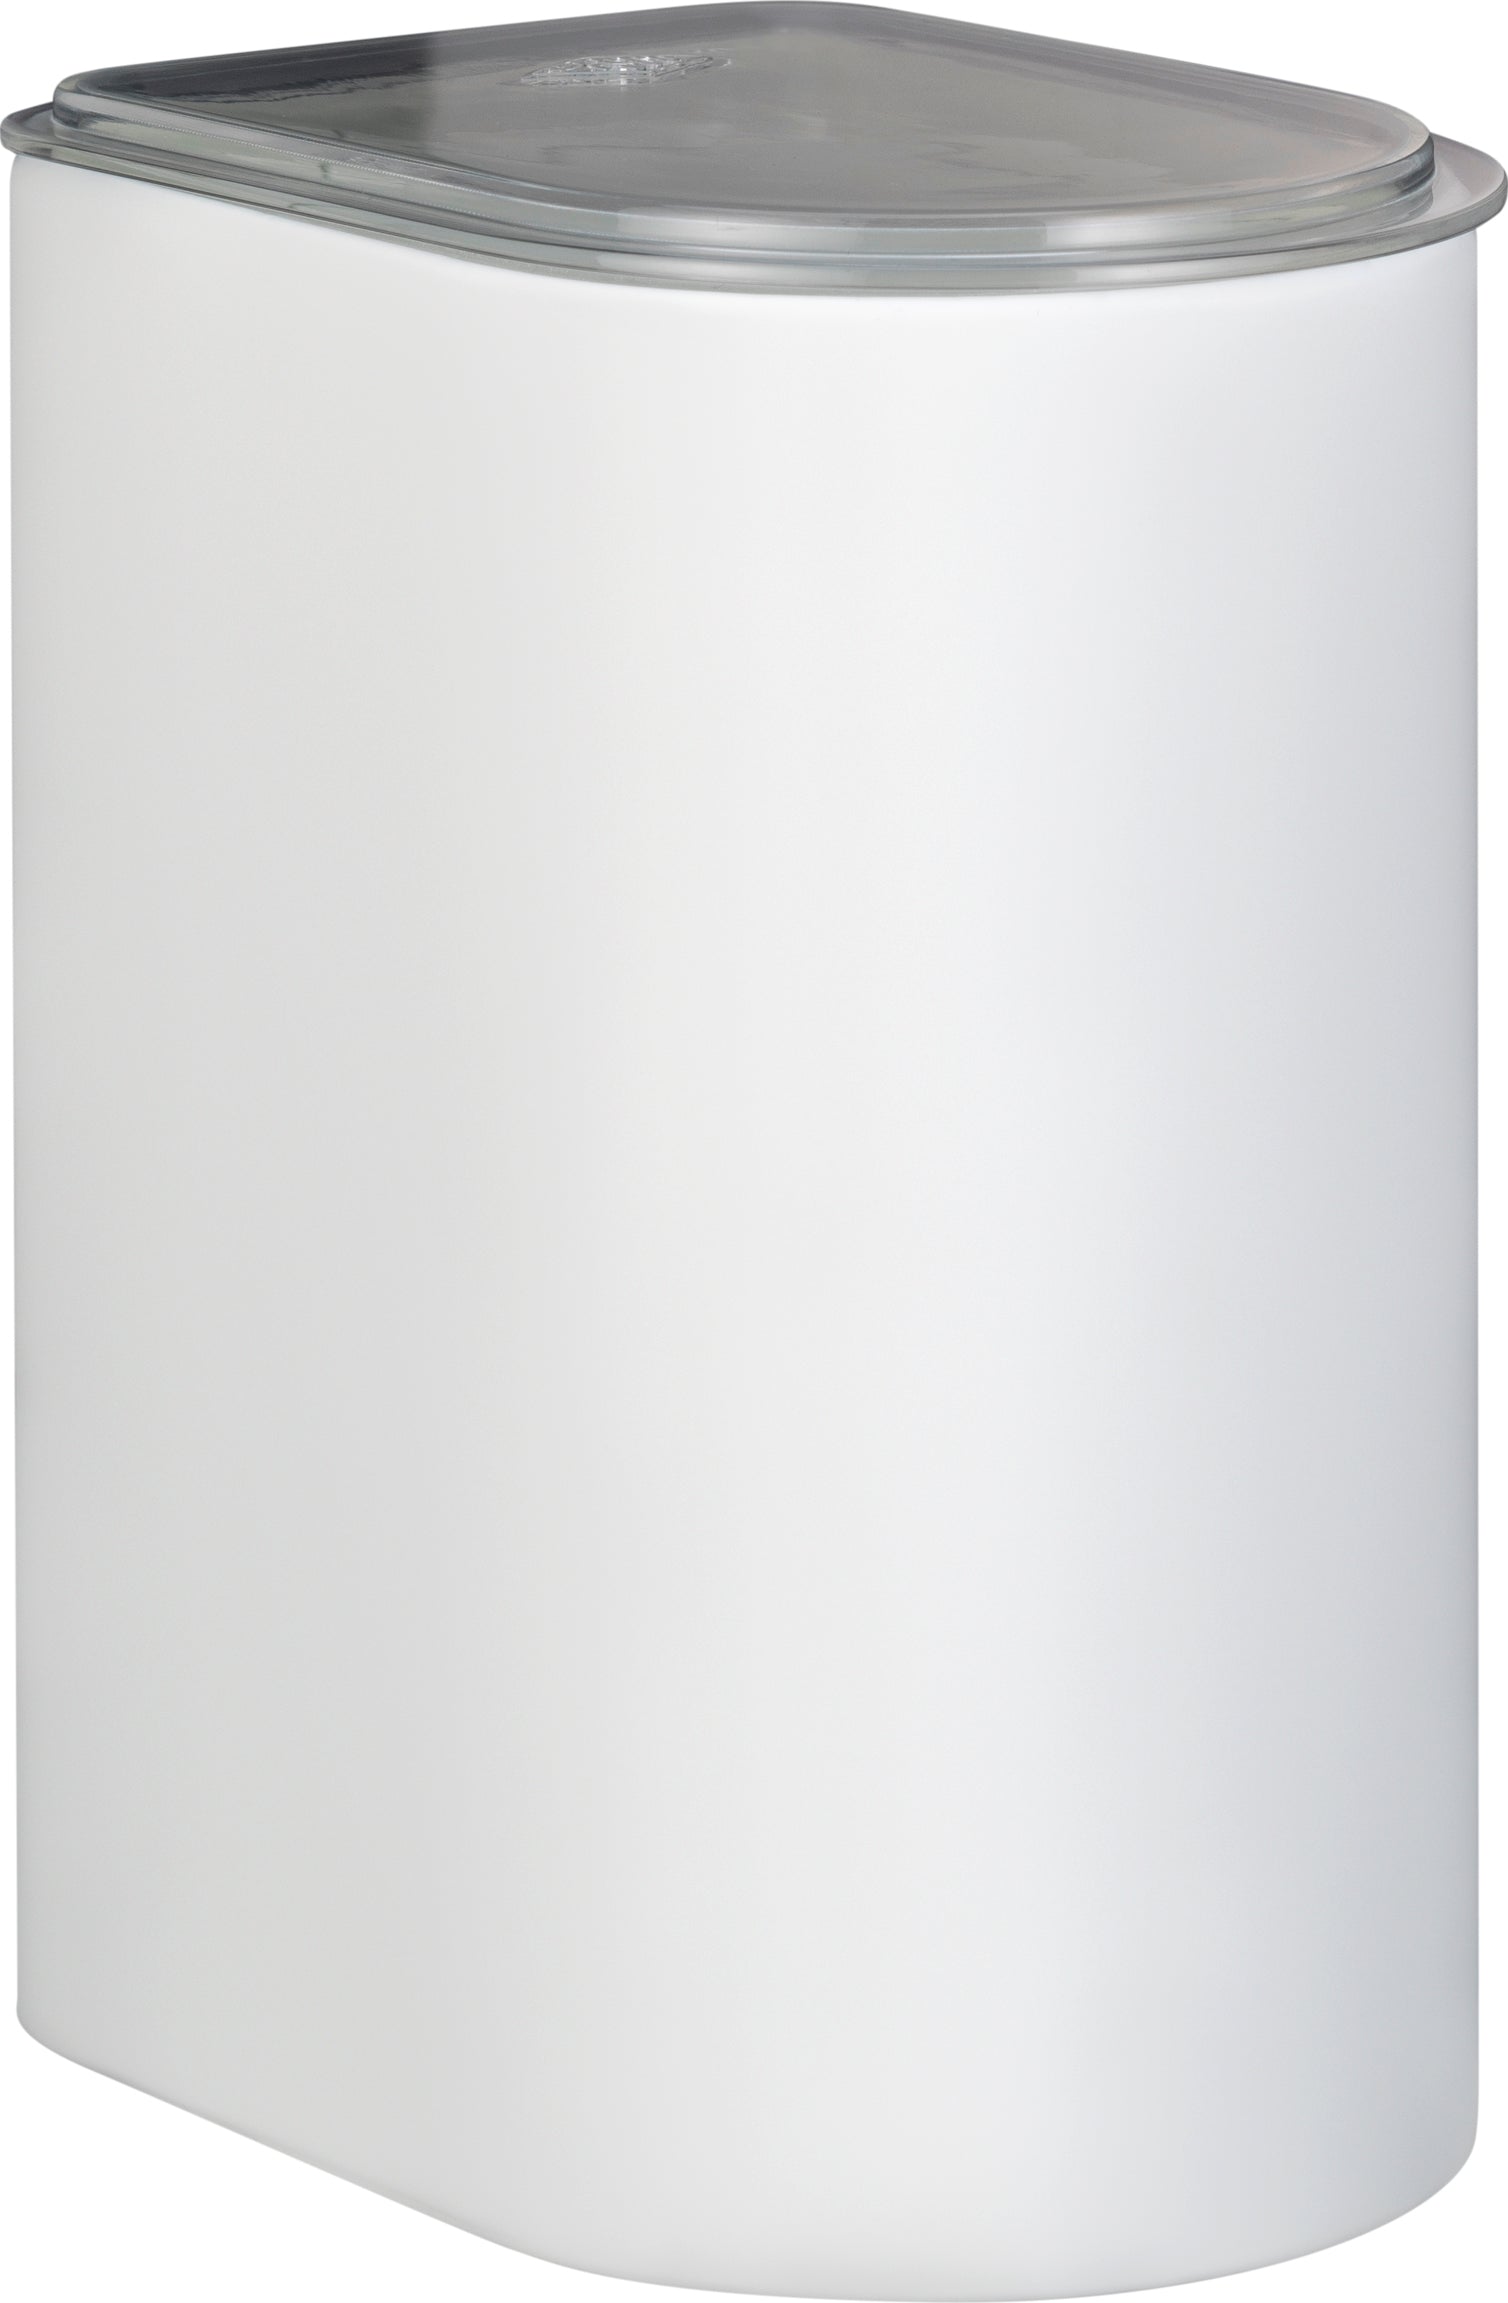 Wesco Canister 3 liter med akryl lokk, hvit matt